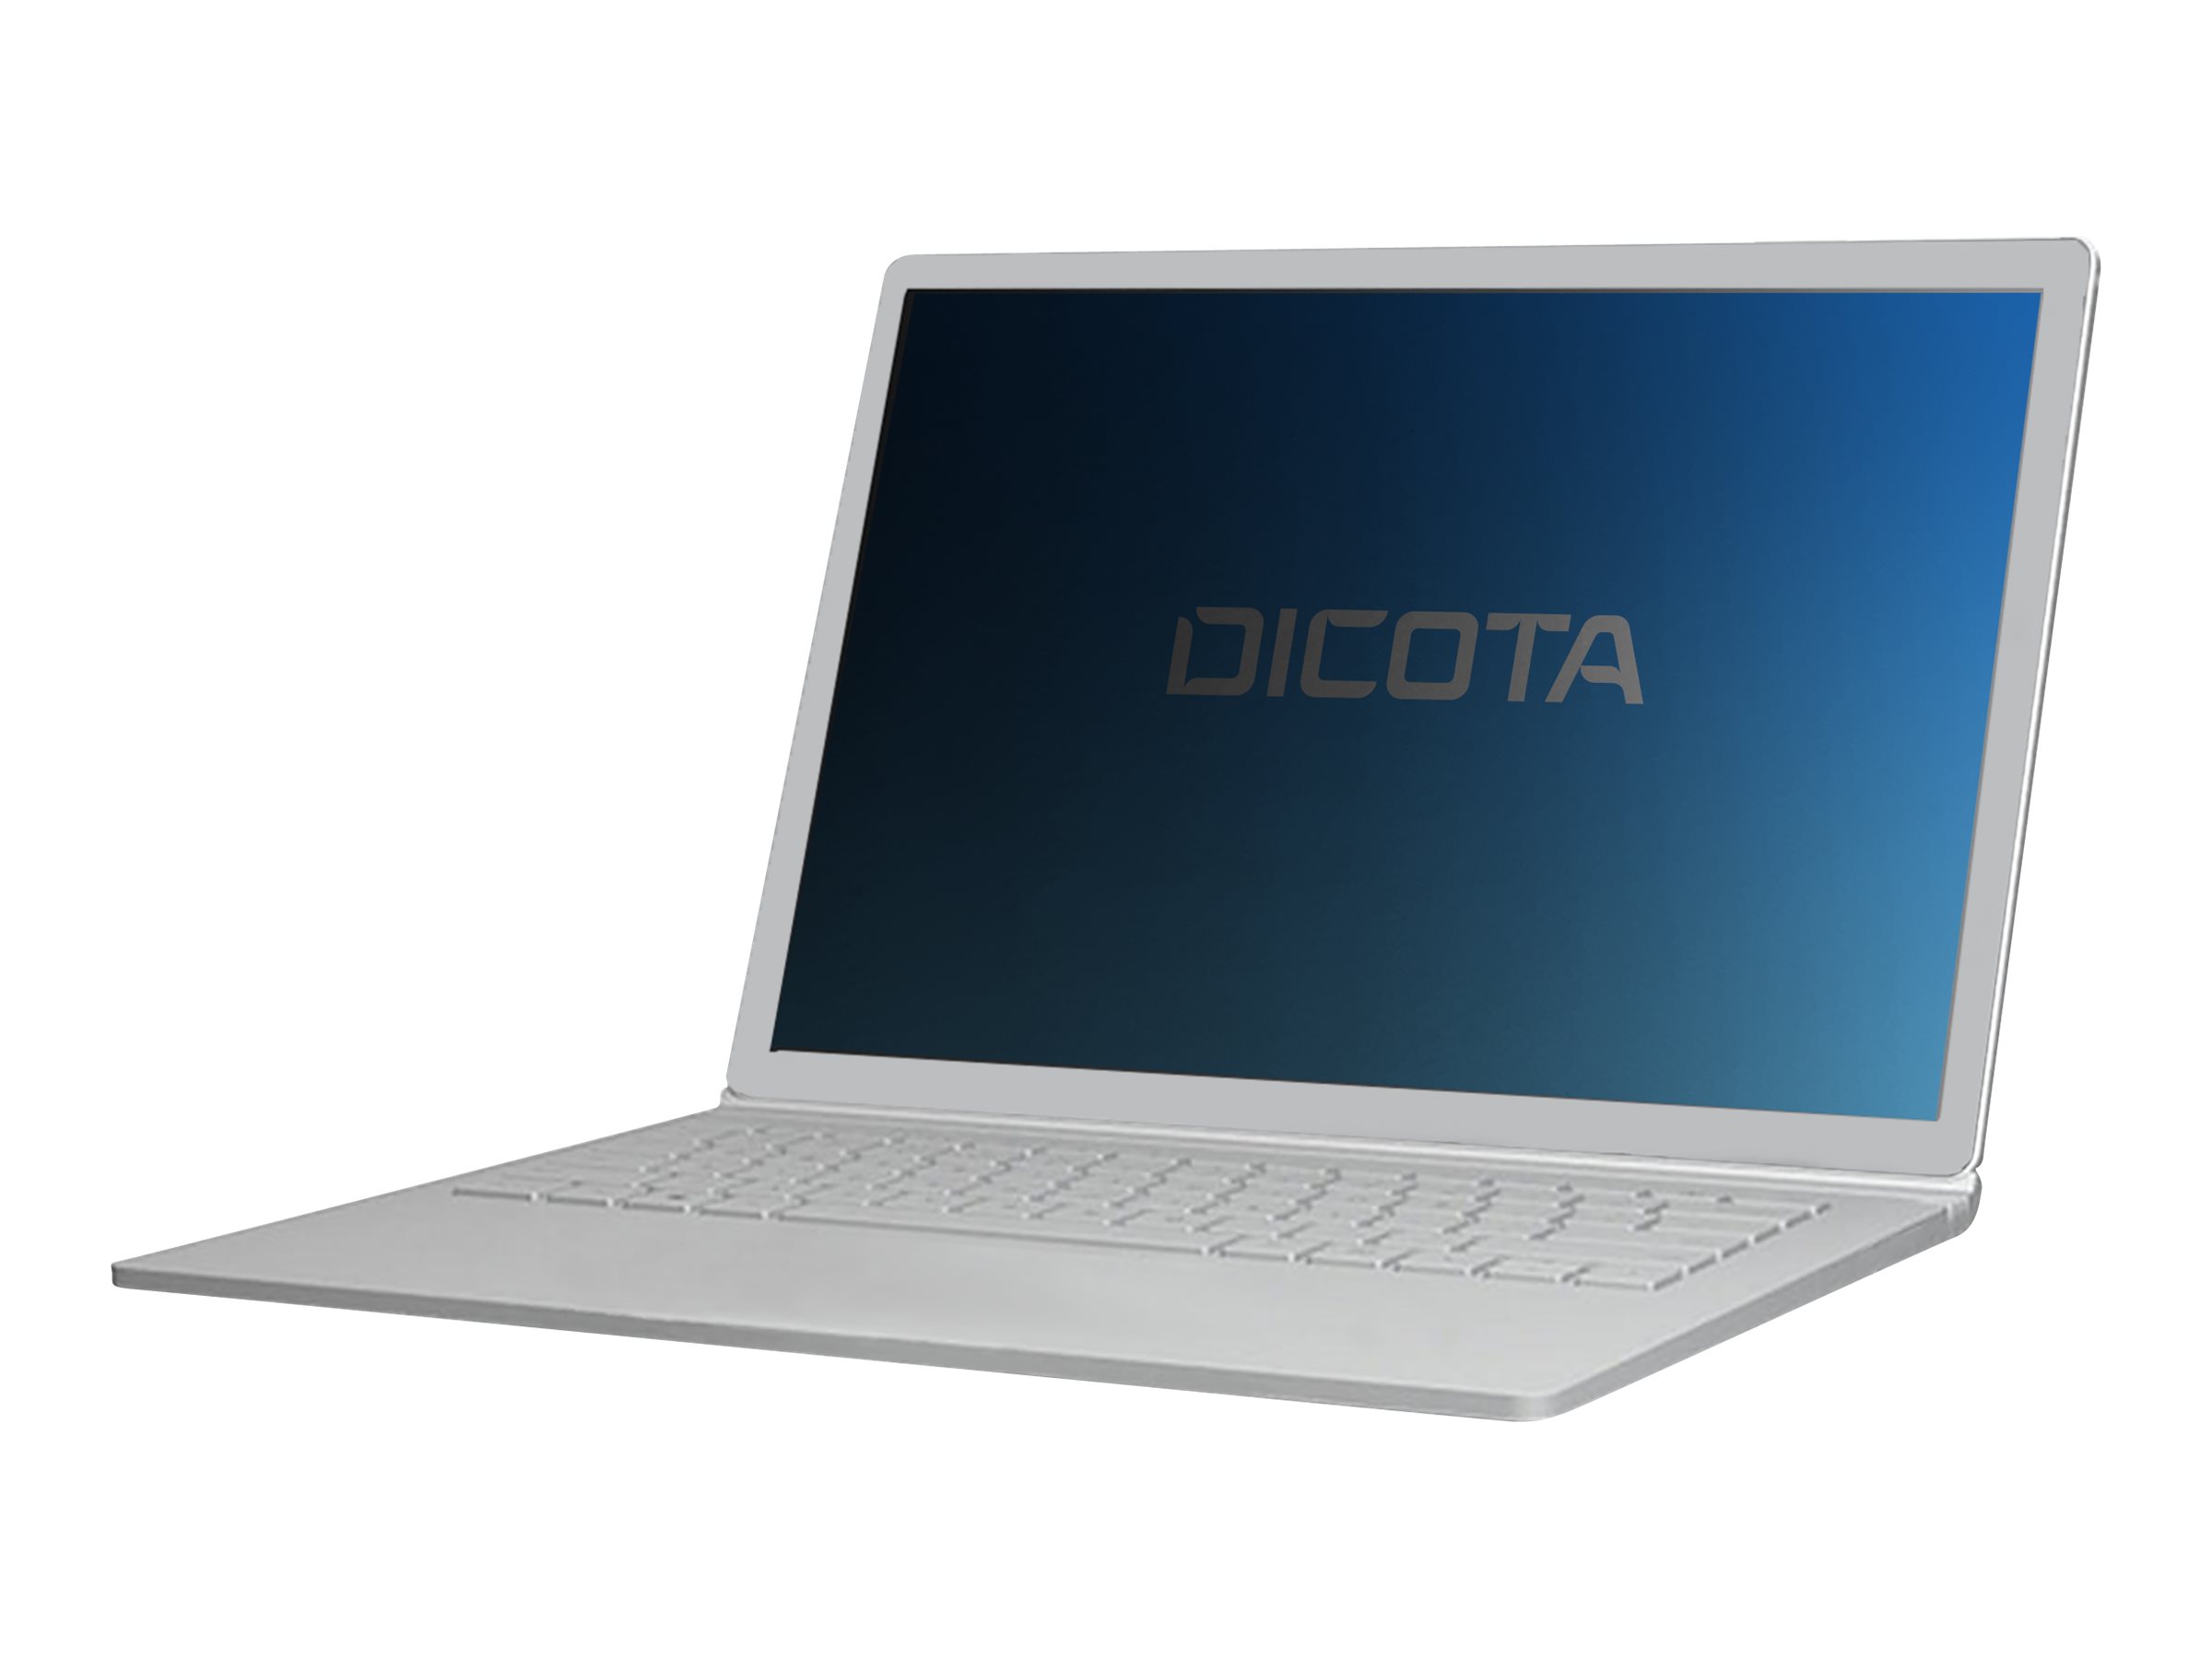 DICOTA - Filtre de confidentialité pour ordinateur portable - 4 voies - adhésif - noir - pour Dell Latitude 7400 2-in-1 - D70171 - Accessoires pour écran